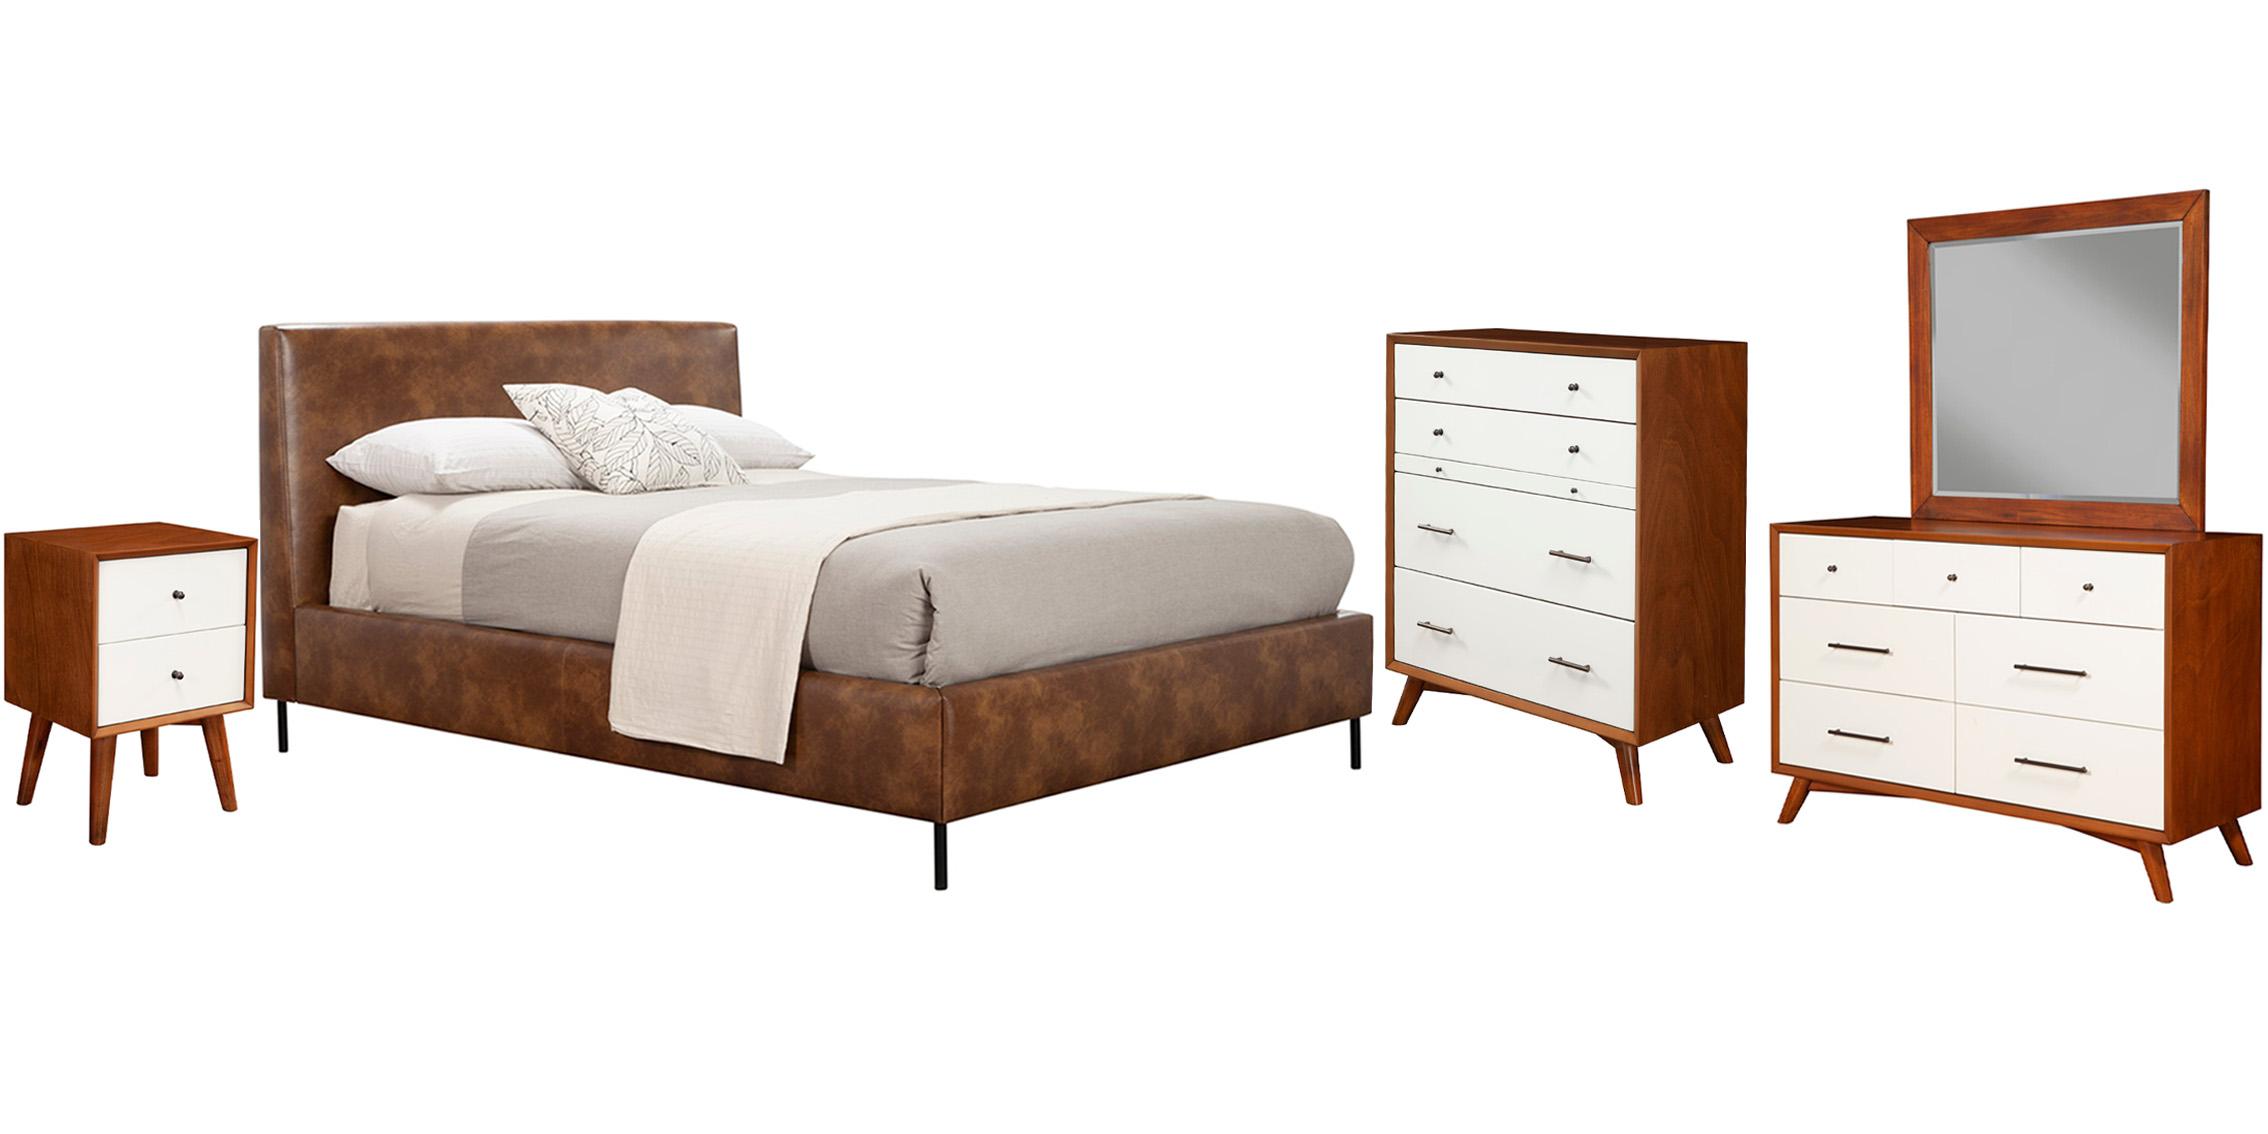 Modern, Rustic Platform Bedroom Set SOPHIA/FLYNN 6902EK-BRN-Set-5 in Brown Faux Leather